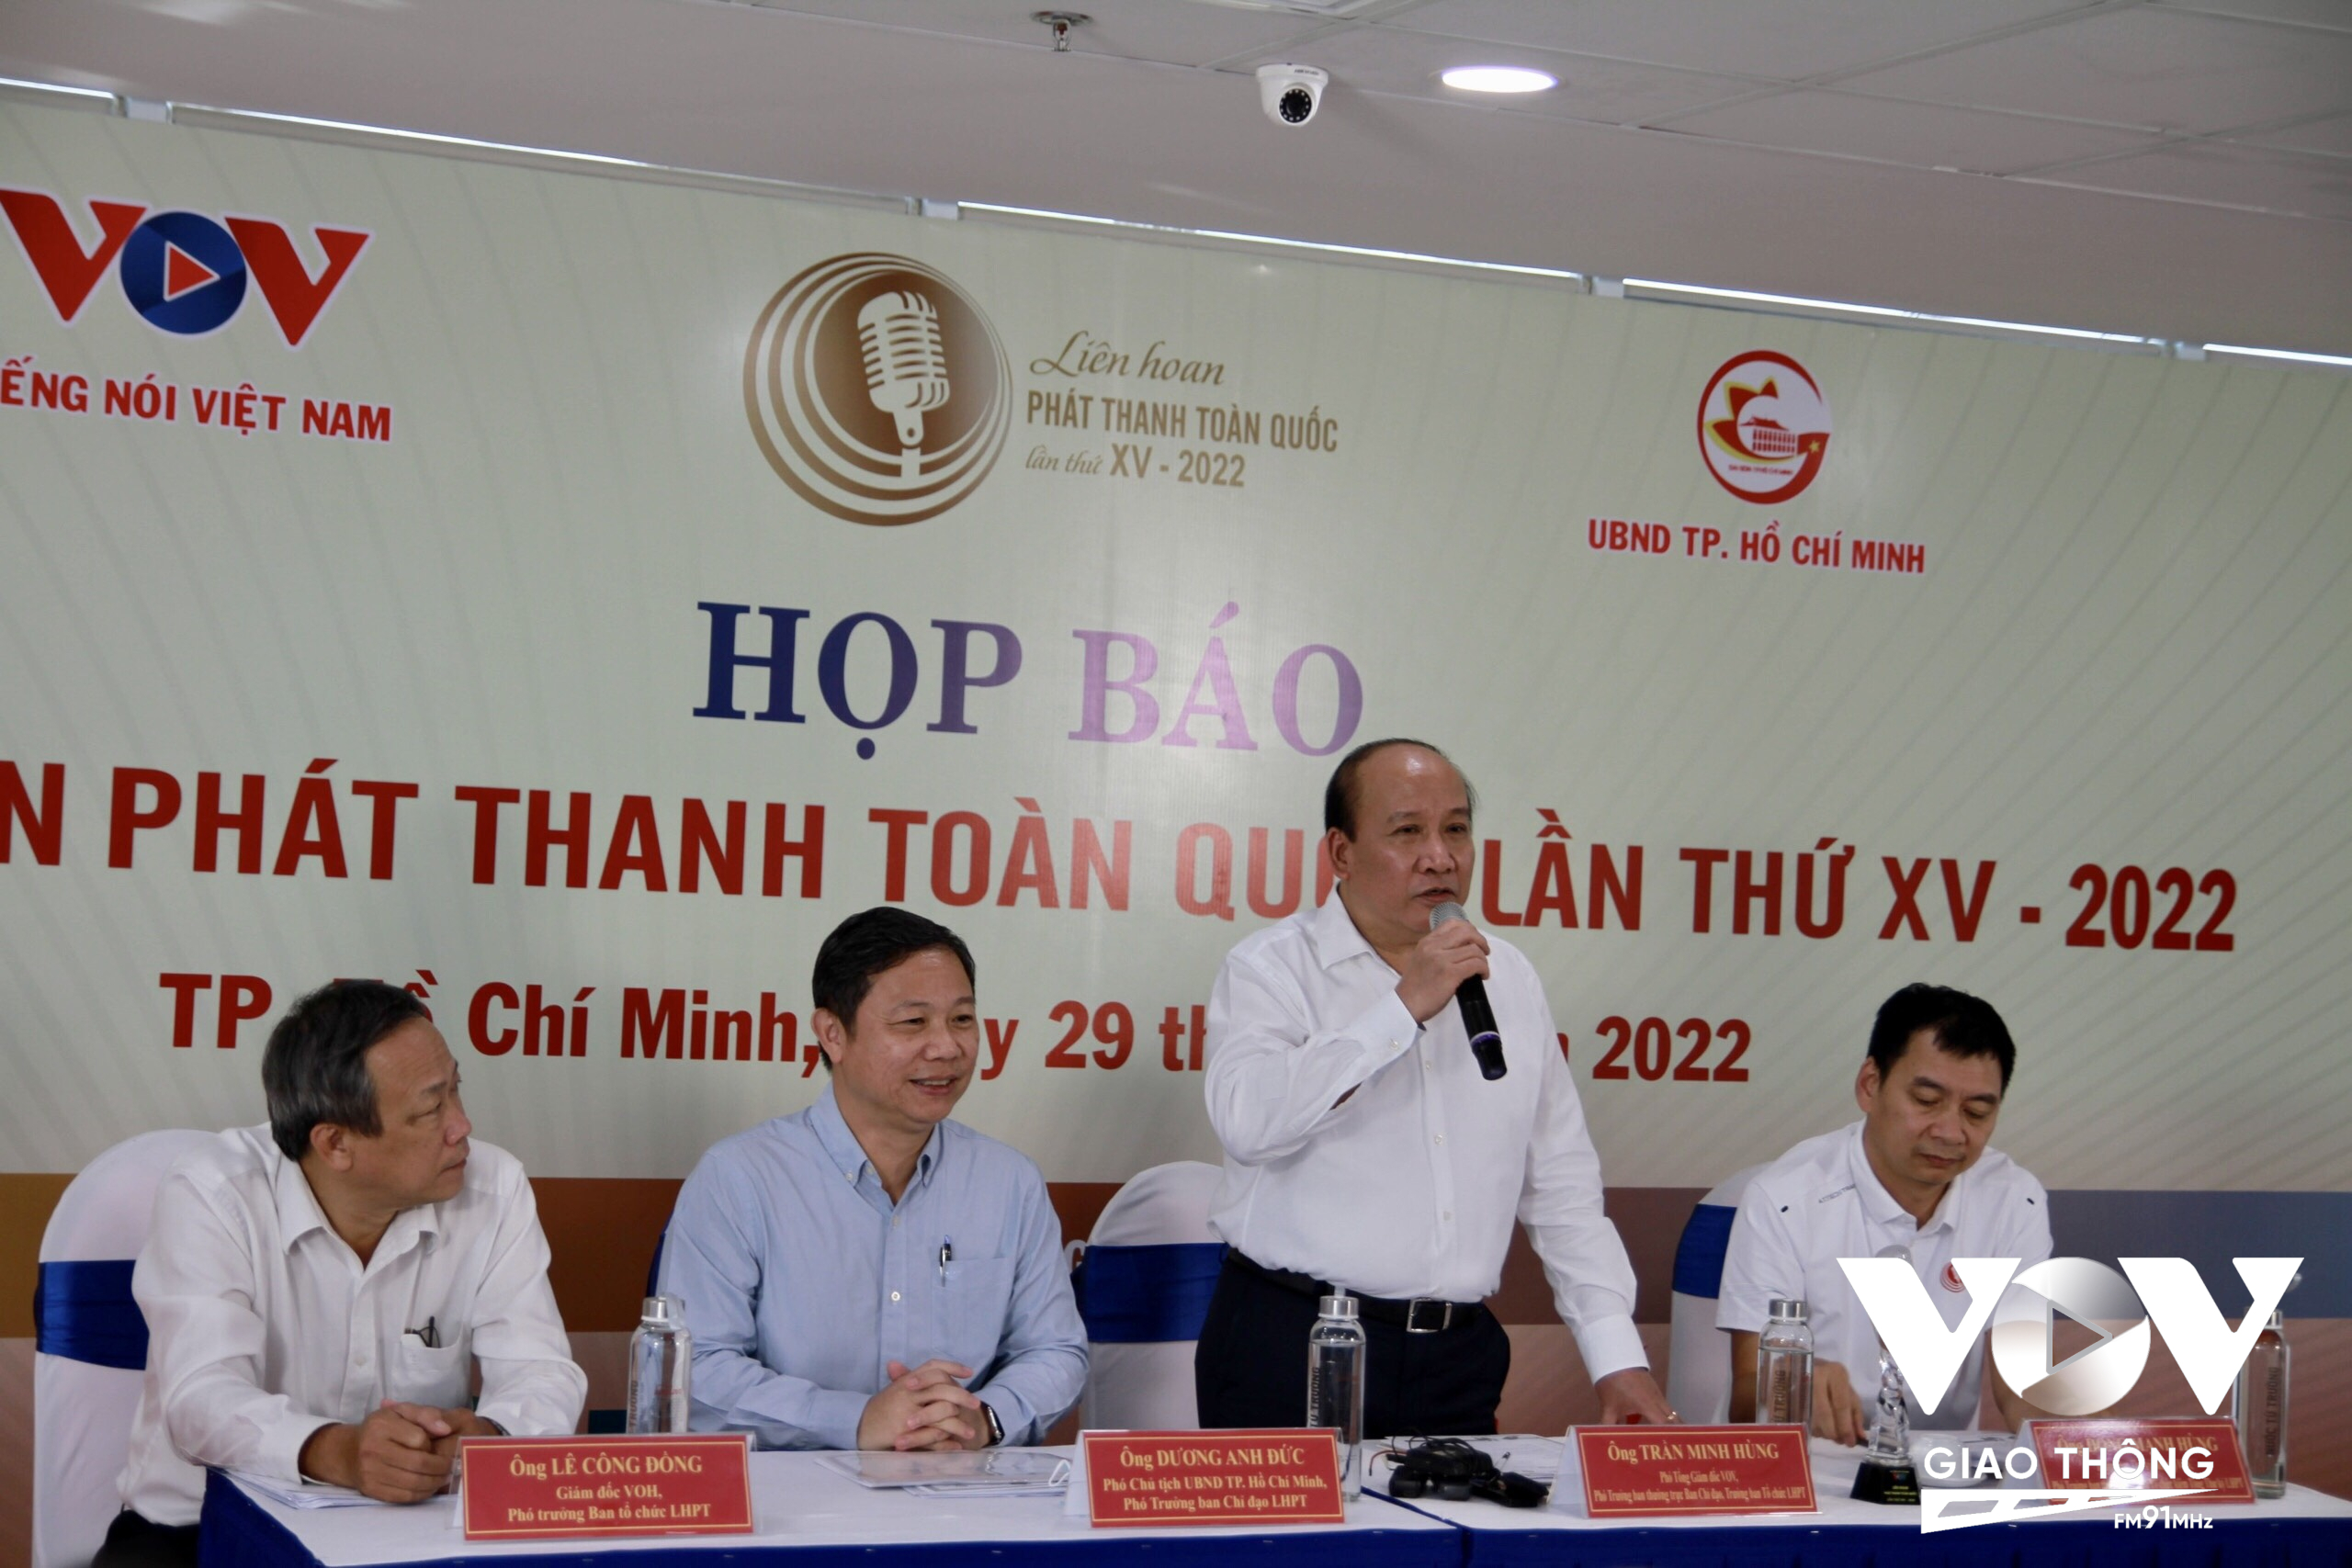 Ông Trần Minh Hùng, Phó Tổng Giám đốc, Đài TNVN, Trưởng Ban Tổ chức Liên hoan phát thanh toàn quốc lần thứ XV phát biểu tại buổi họp báo.